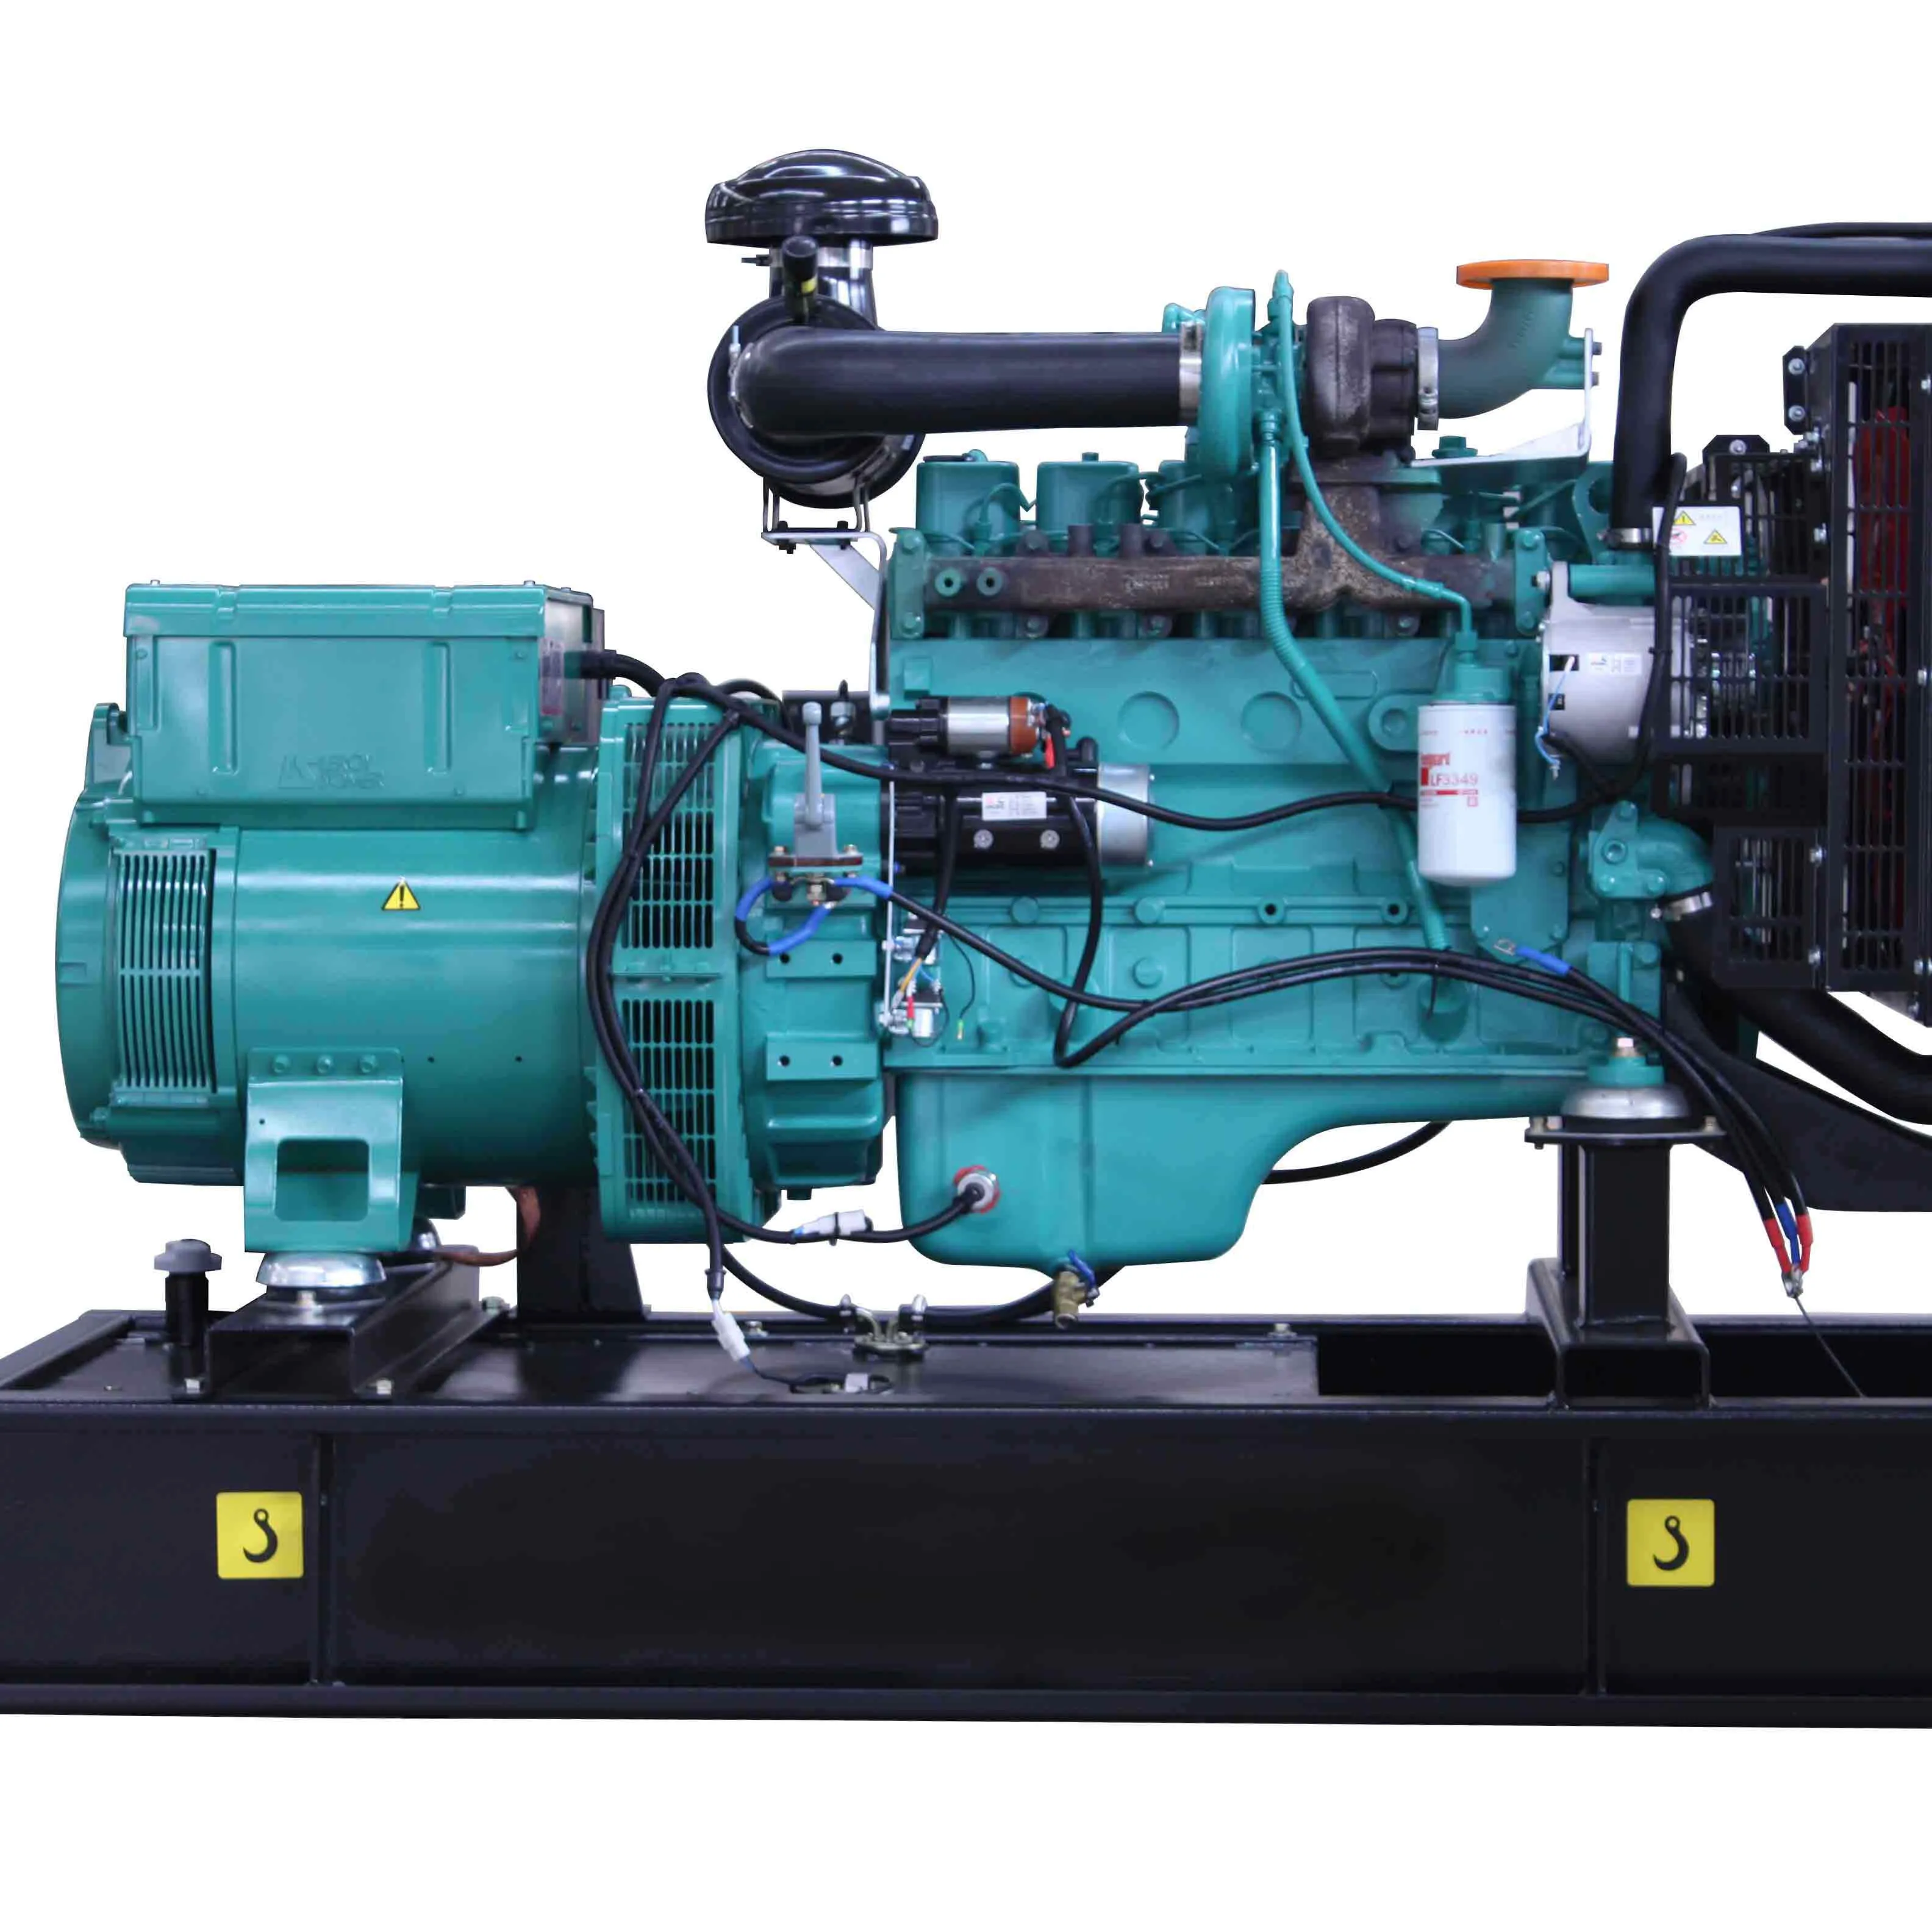 AOSIF Versorgung Diesel generator AC220 160kw 200kva Prime Power 220kva Standby Power Support von Cummins Gmotor und Leroy-Somer